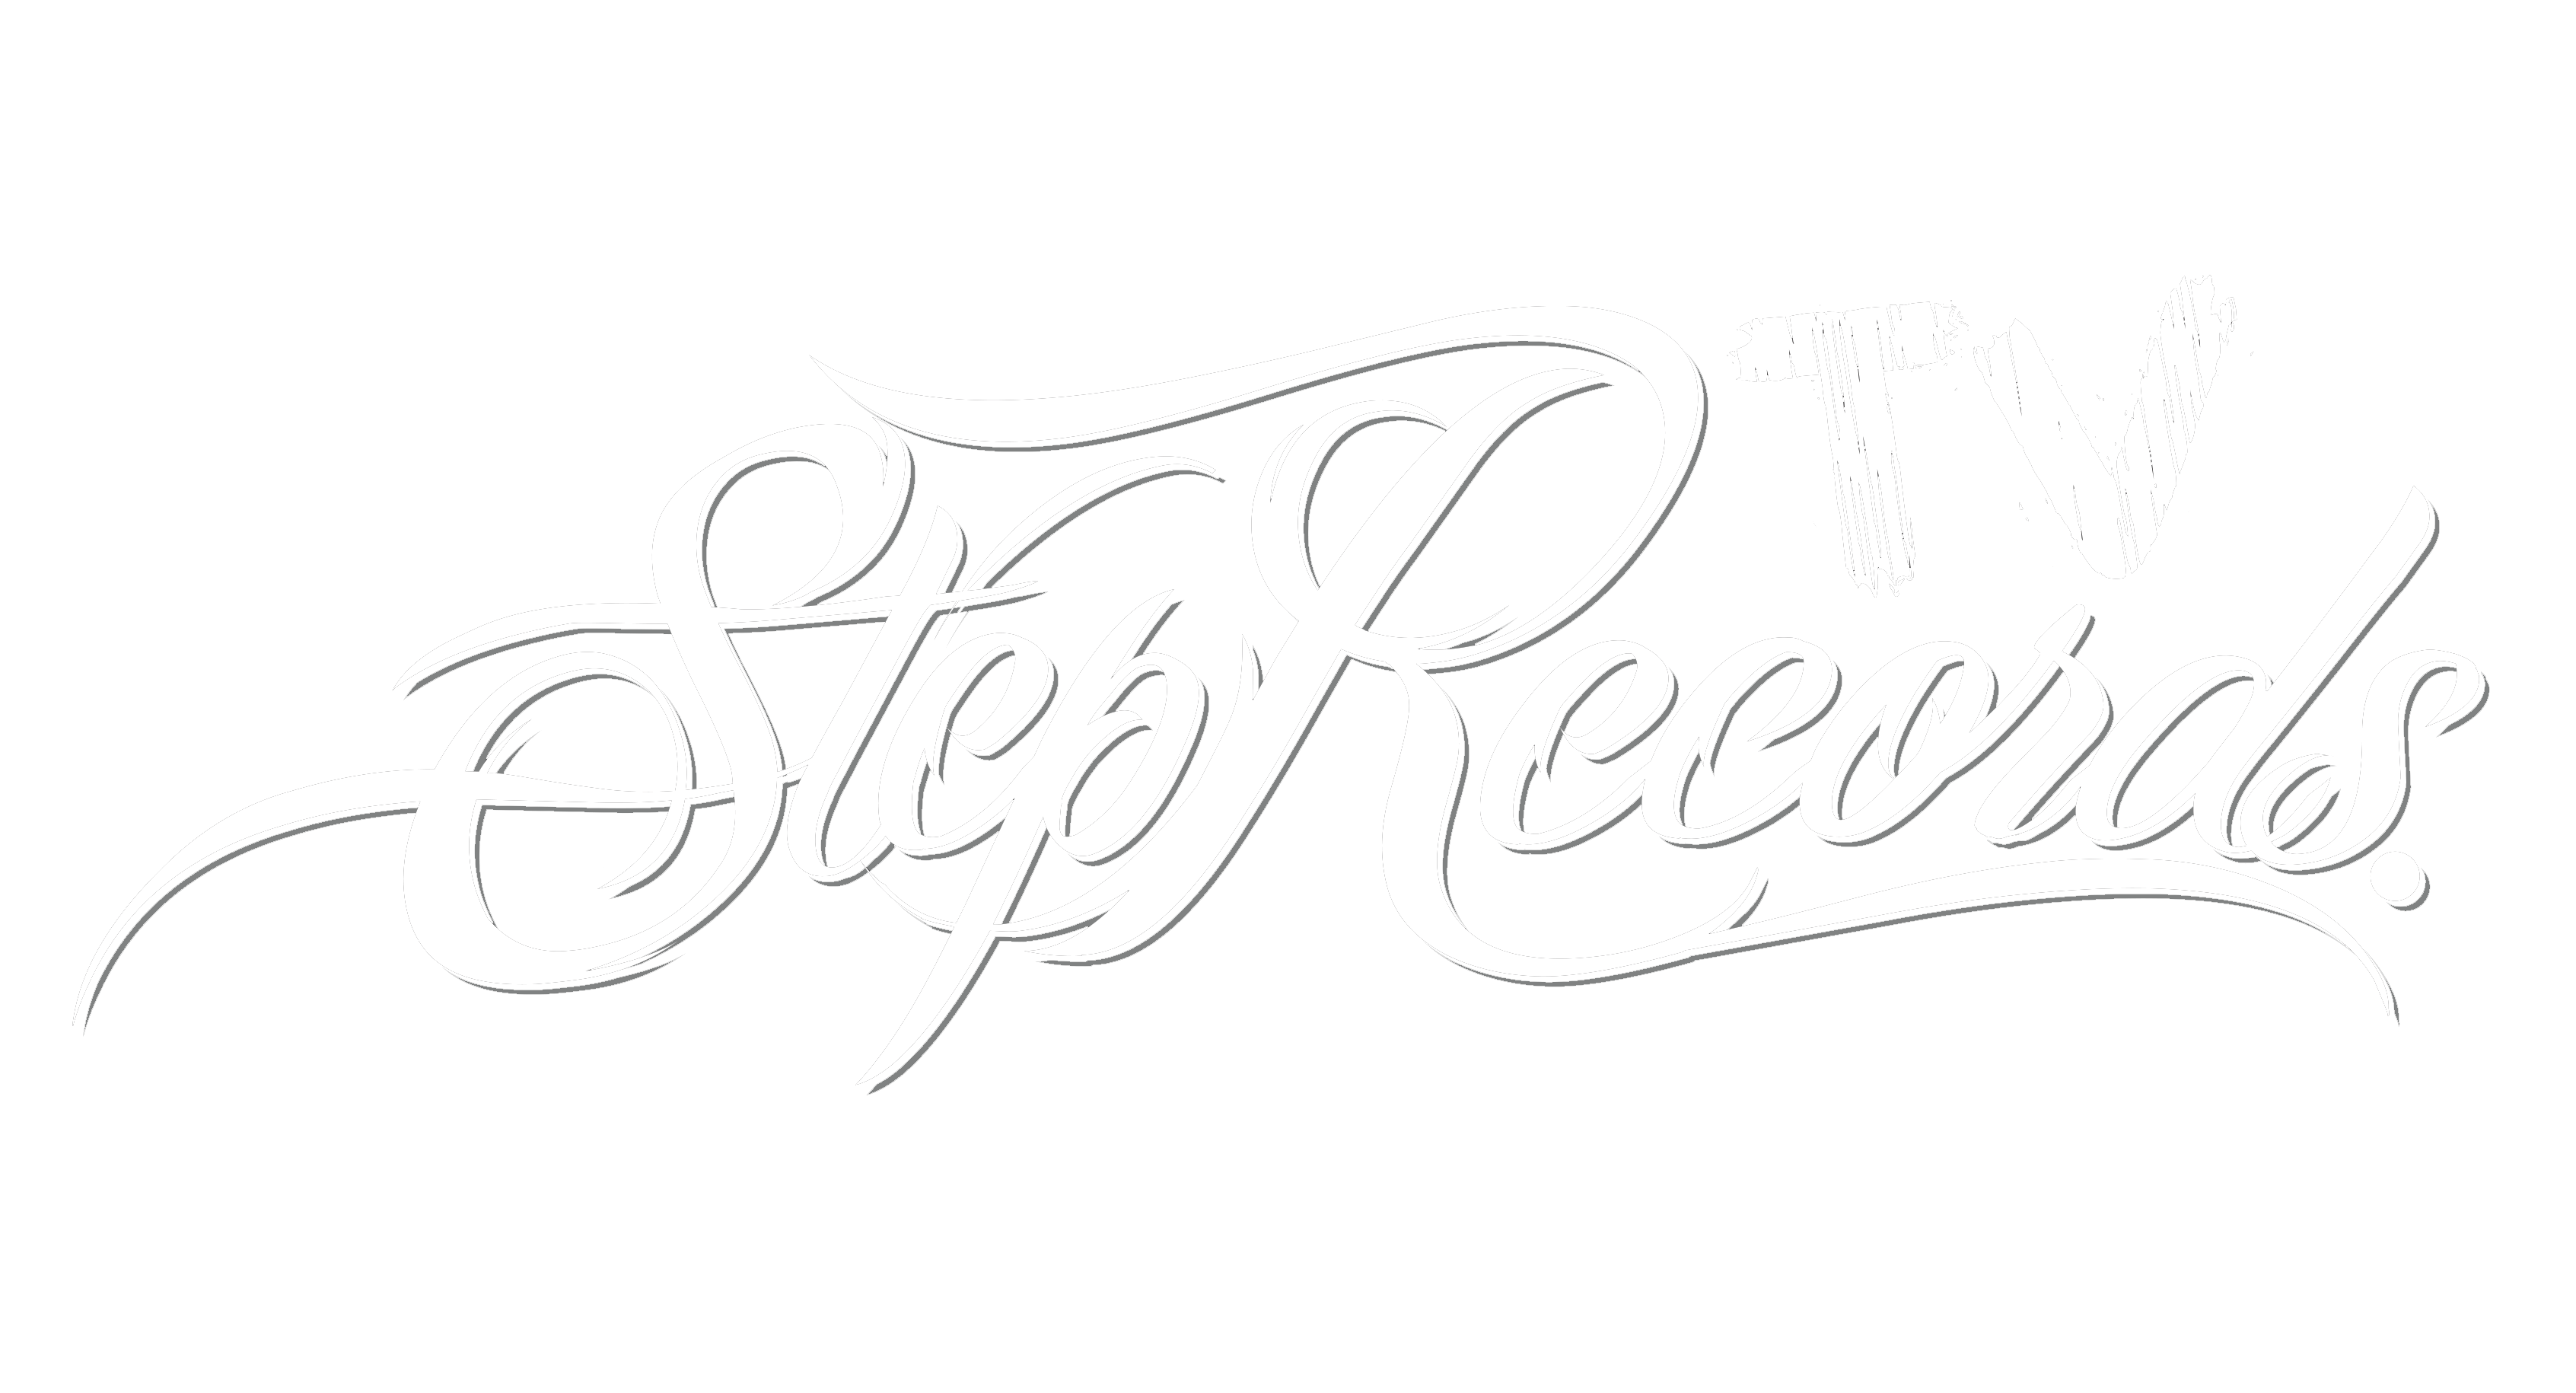 StepRecordsTV_OK_biale